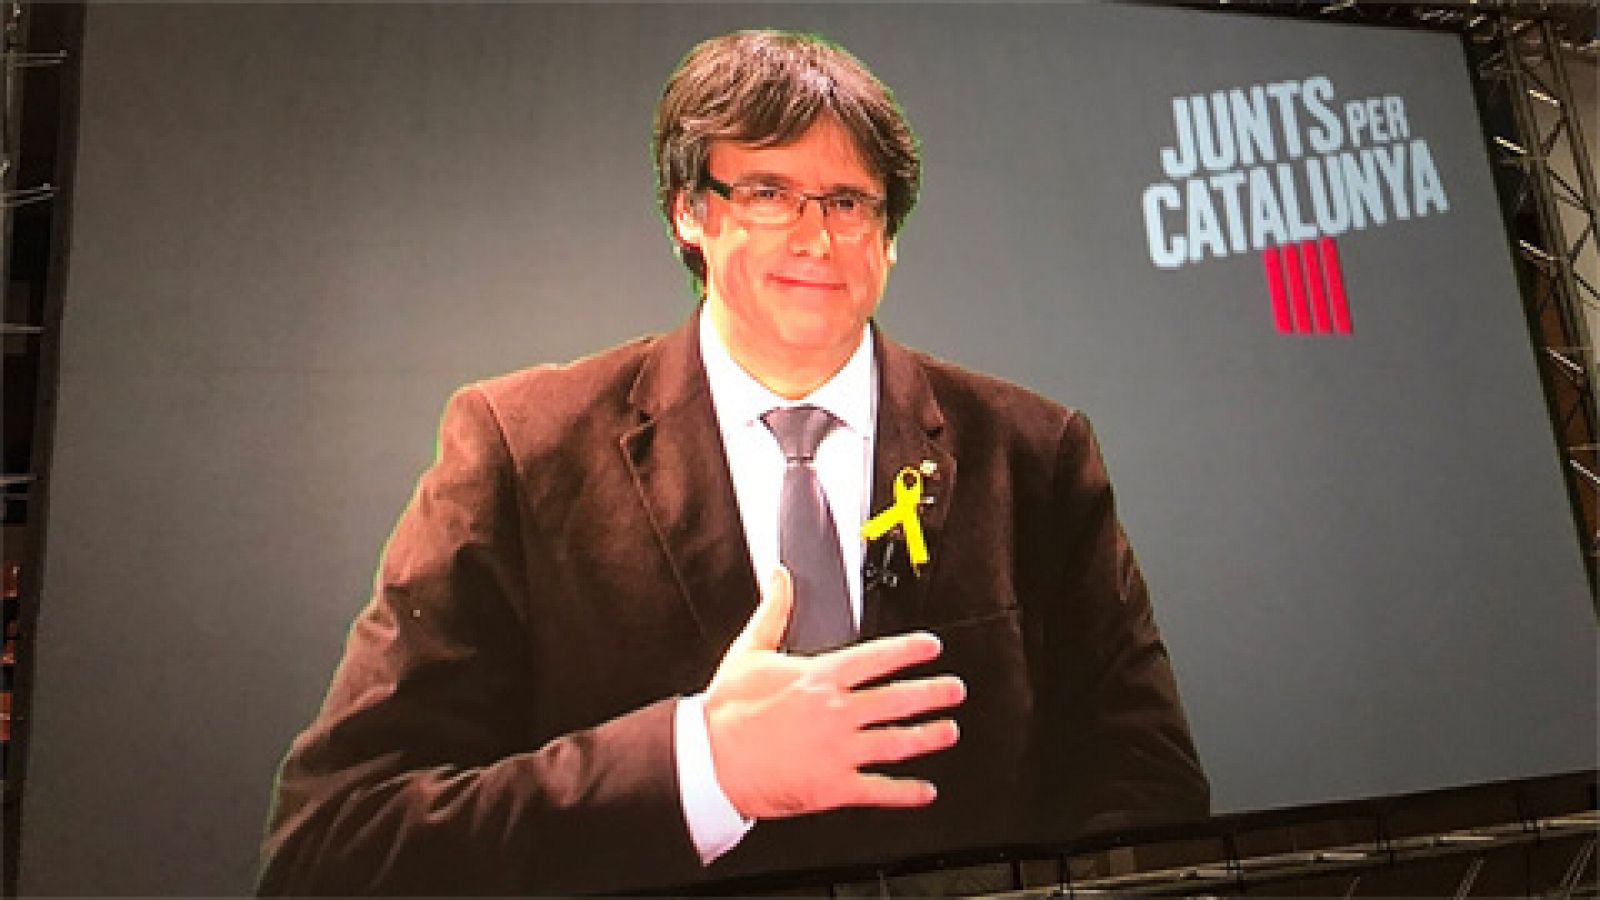 Elecciones catalanas: Puigdemont acusa al "frente del 155" de calumniar a la escuela catalana